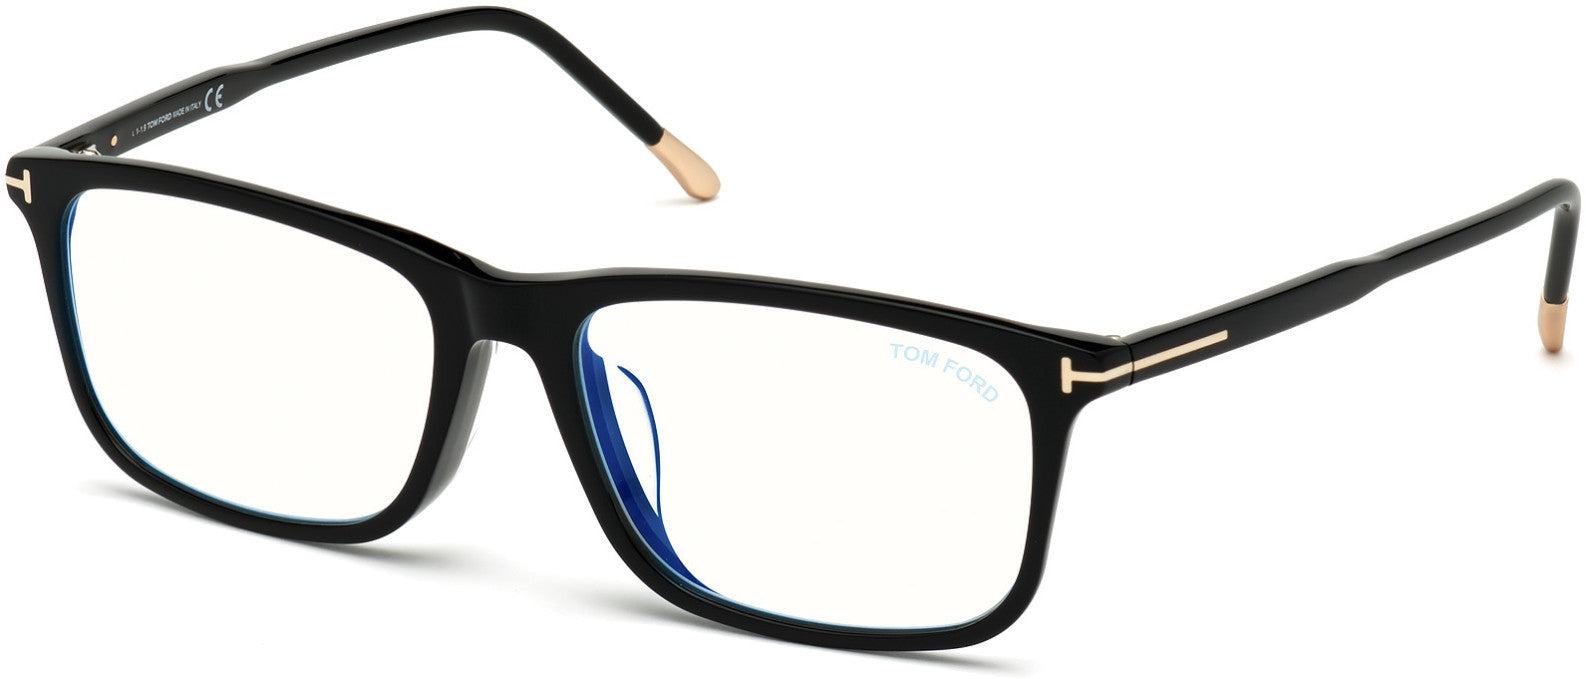 Tom Ford FT5646-D-B Rectangular Eyeglasses 001-001 - Shiny Black W. Shiny Rose Gold Temple Tips/ Blue Block Lenses